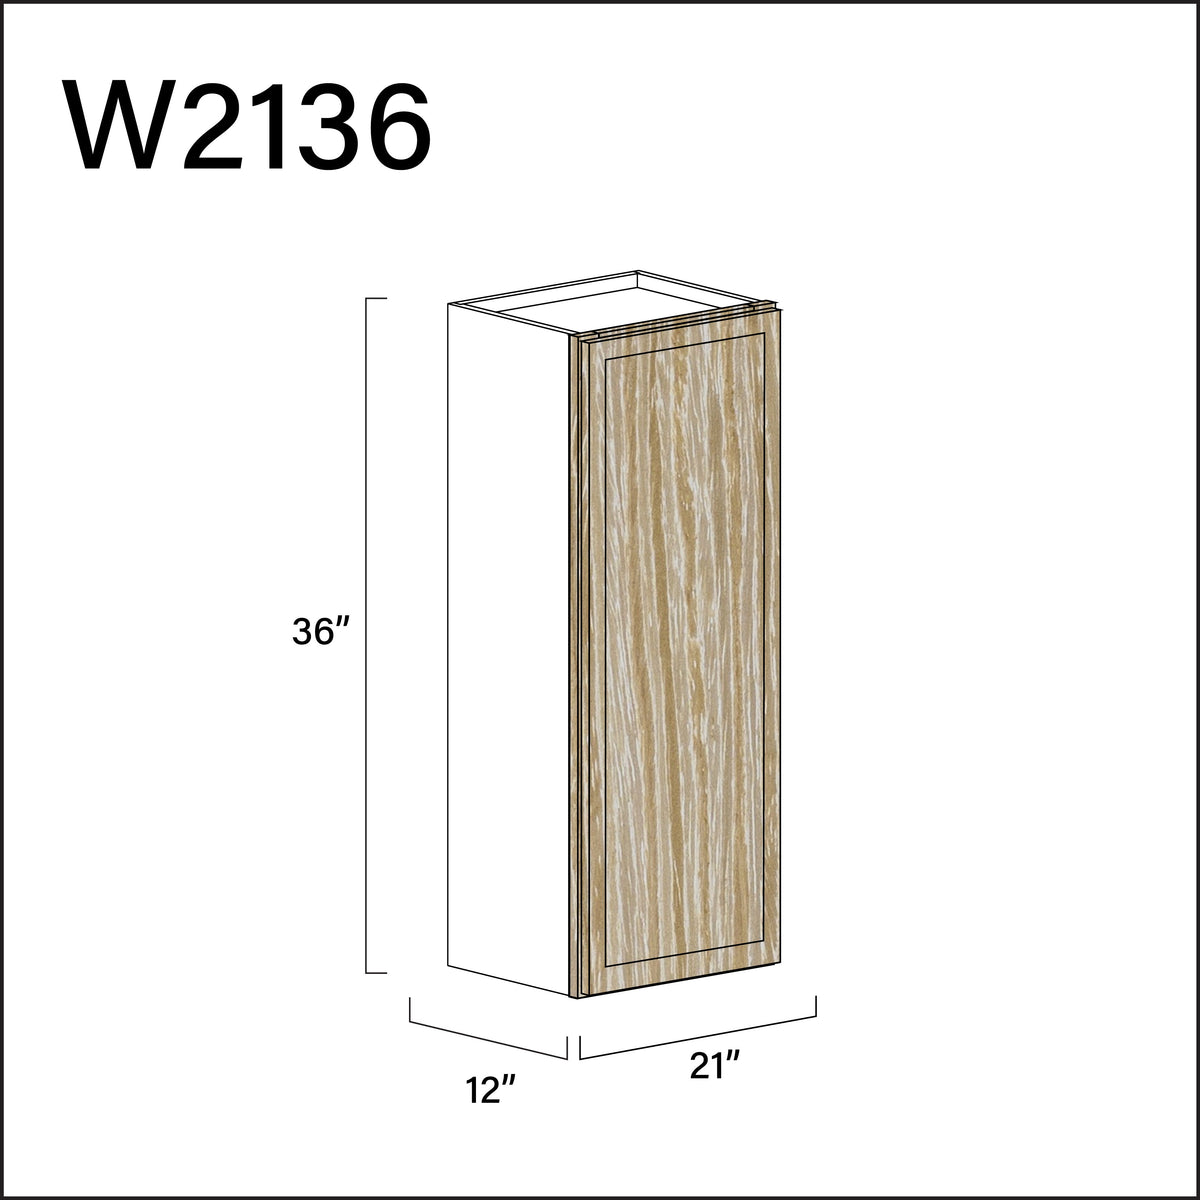 Milton Oak Slim Shaker Single Door Wall Cabinet - 21" W x 36" H x 12" D